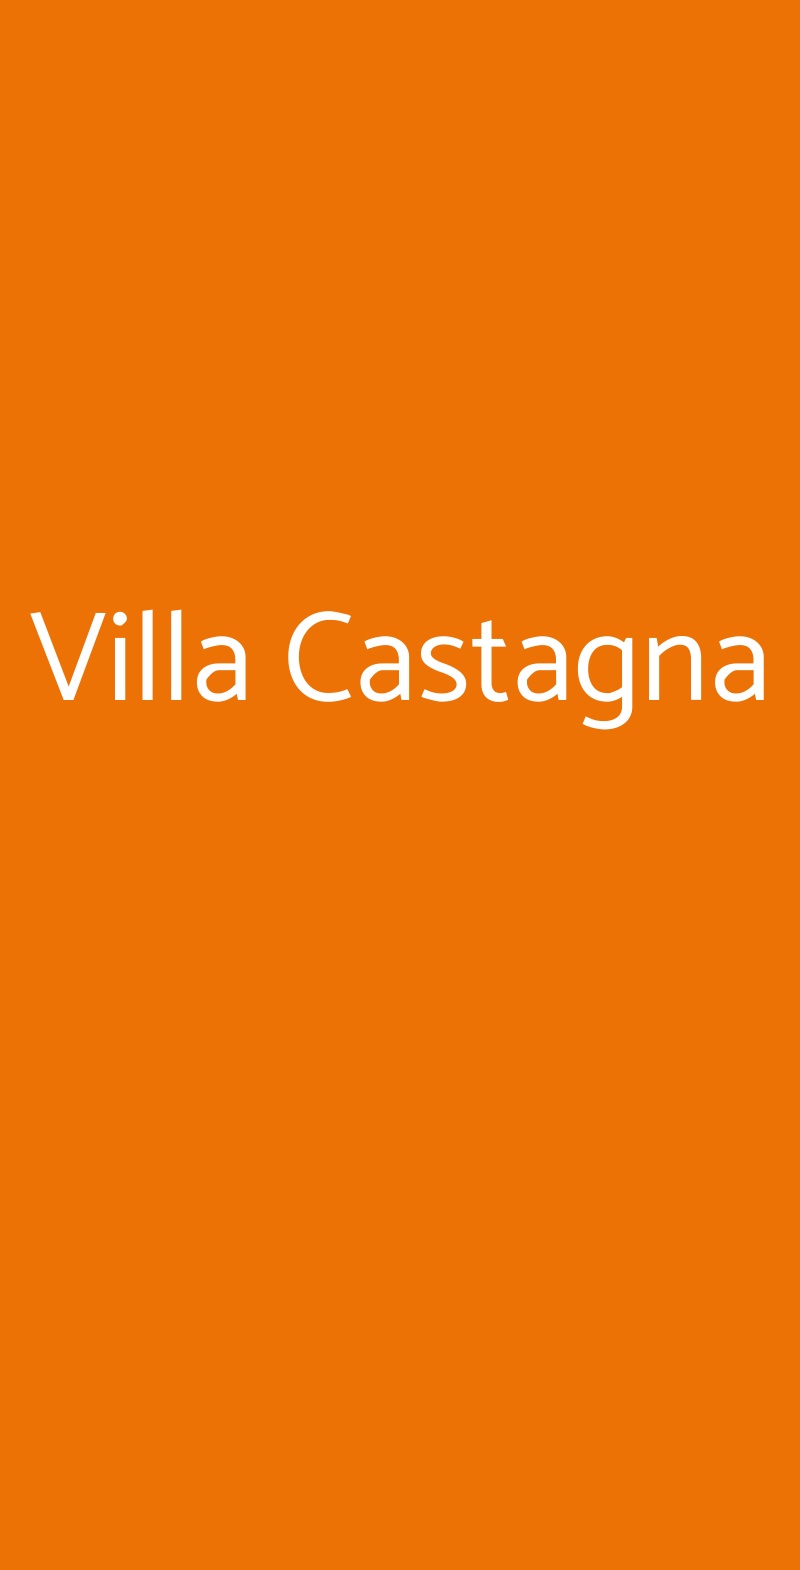 Villa Castagna Crocetta del Montello menù 1 pagina